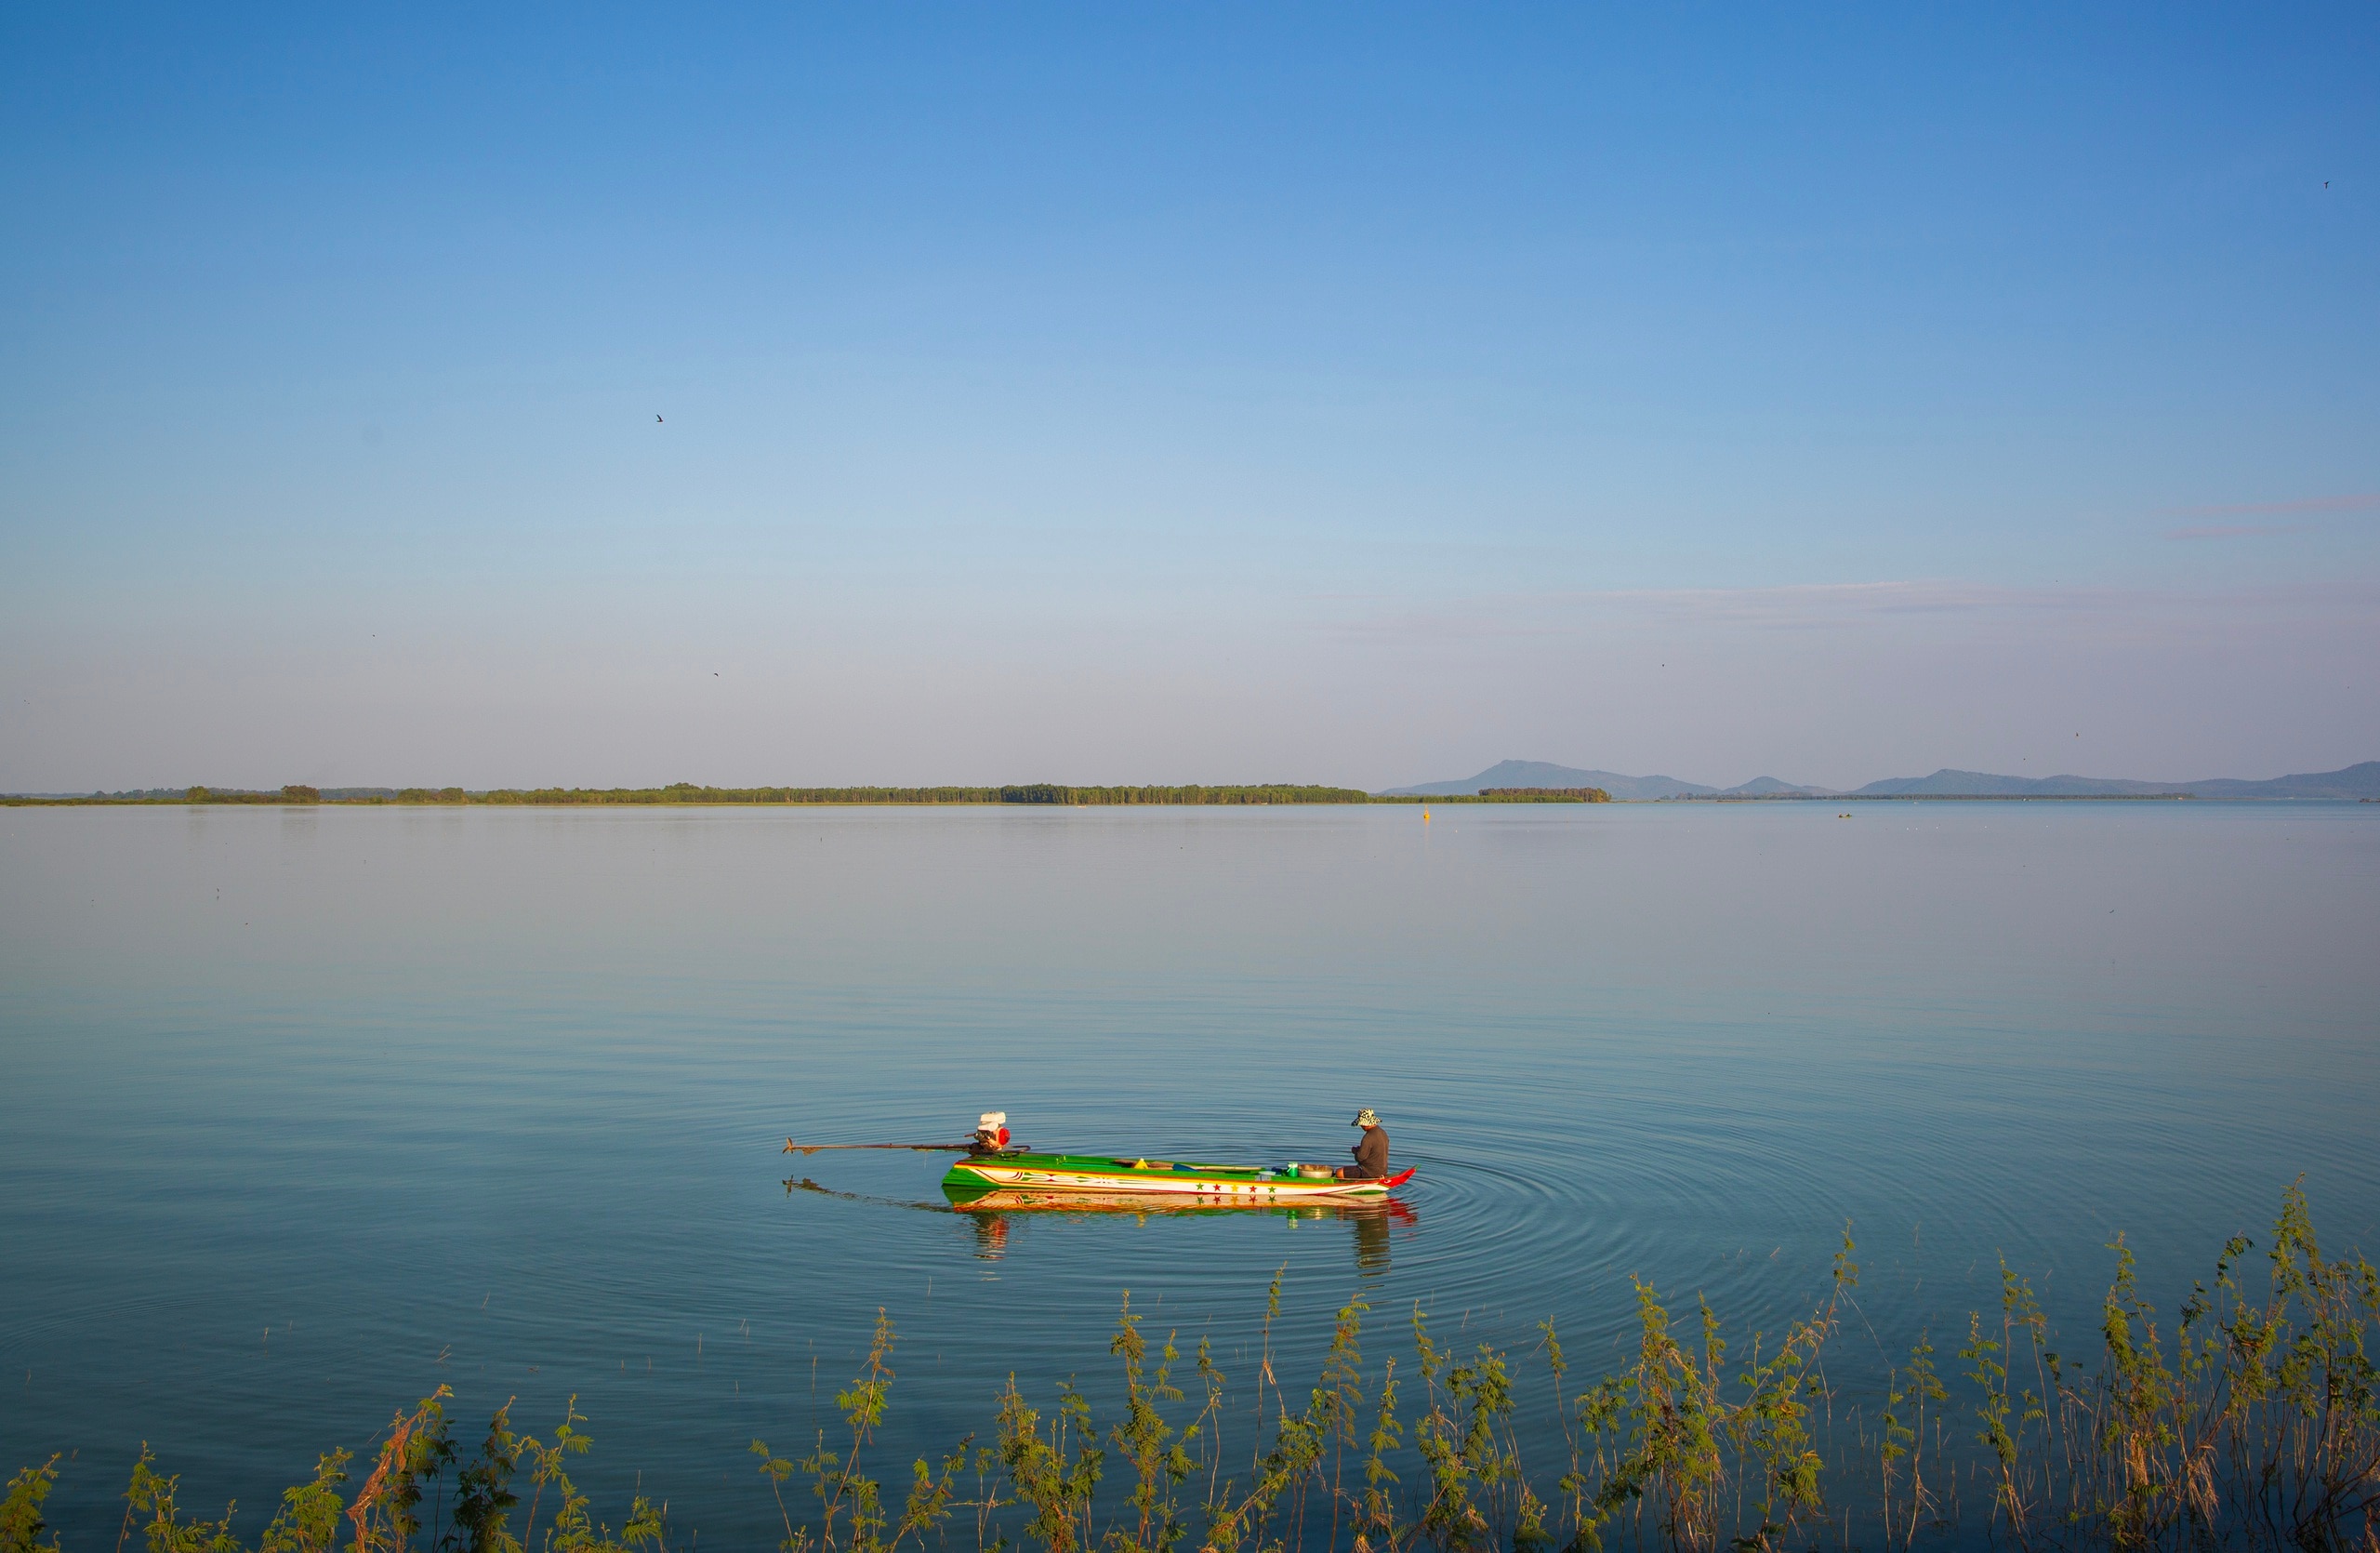 Hồ Dầu Tiếng rộng hơn 27 ki lô mét vuông, dung tích 1,58 tỉ mét khô nước, là hồ nhân tạo lớn nhất Đông Nam Á trải dài qua địa phận 3 tỉnh Tây Ninh, Bình Dương và Bình Phước